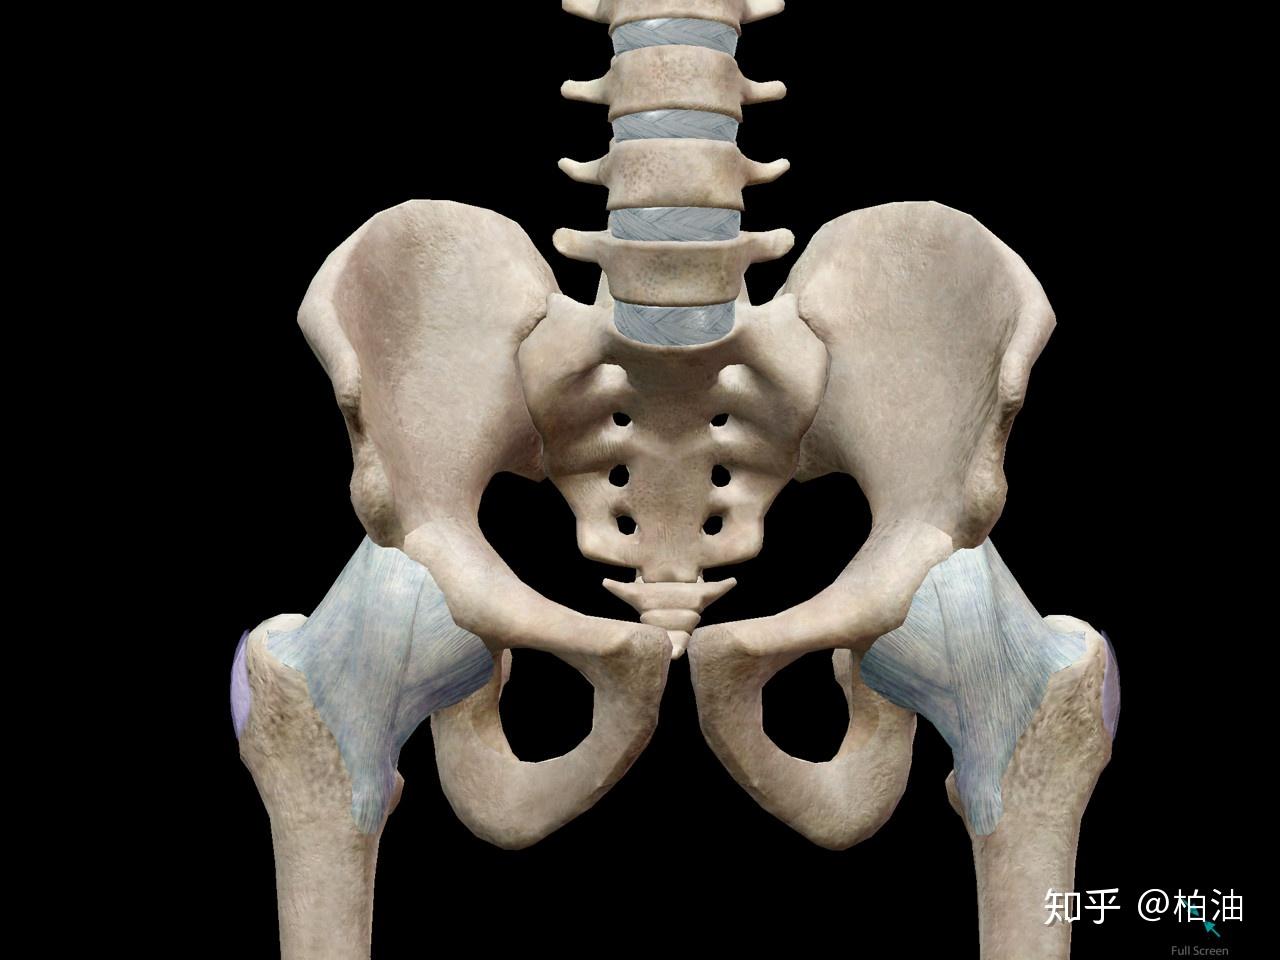 教你看懂自己骨盆问题的X光片分析 - 知乎